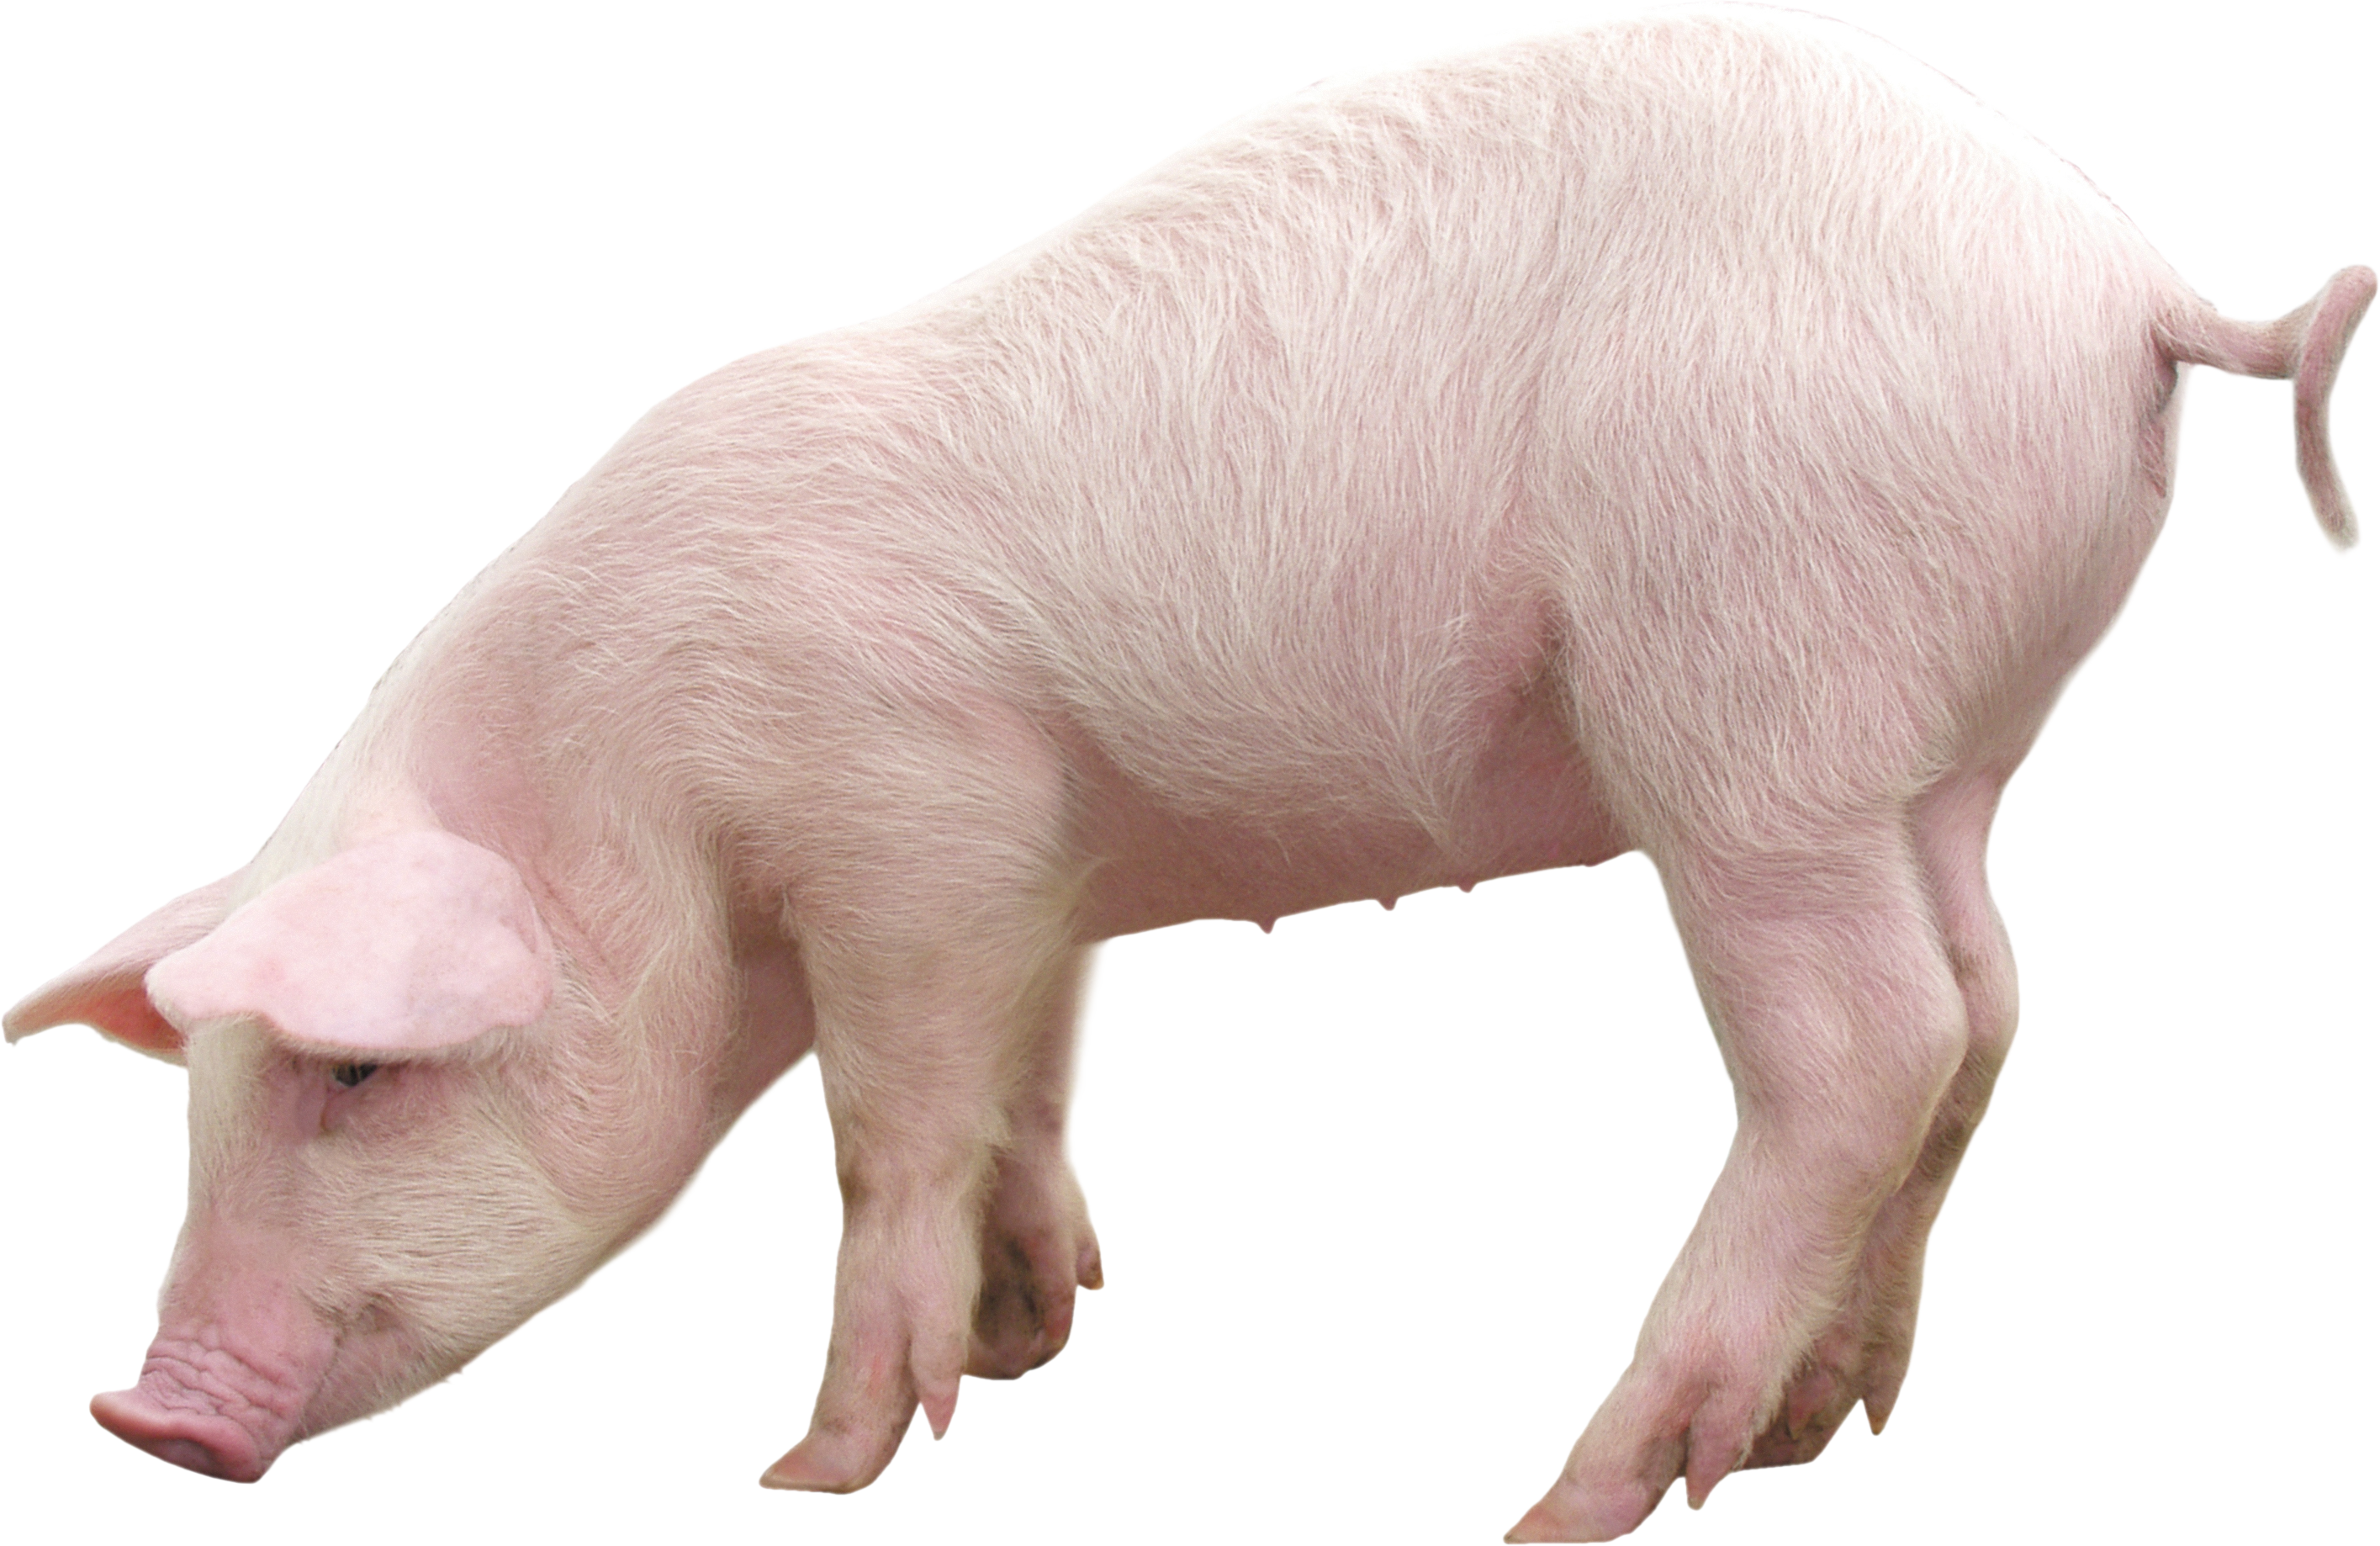 Image Transparente de porc de ferme